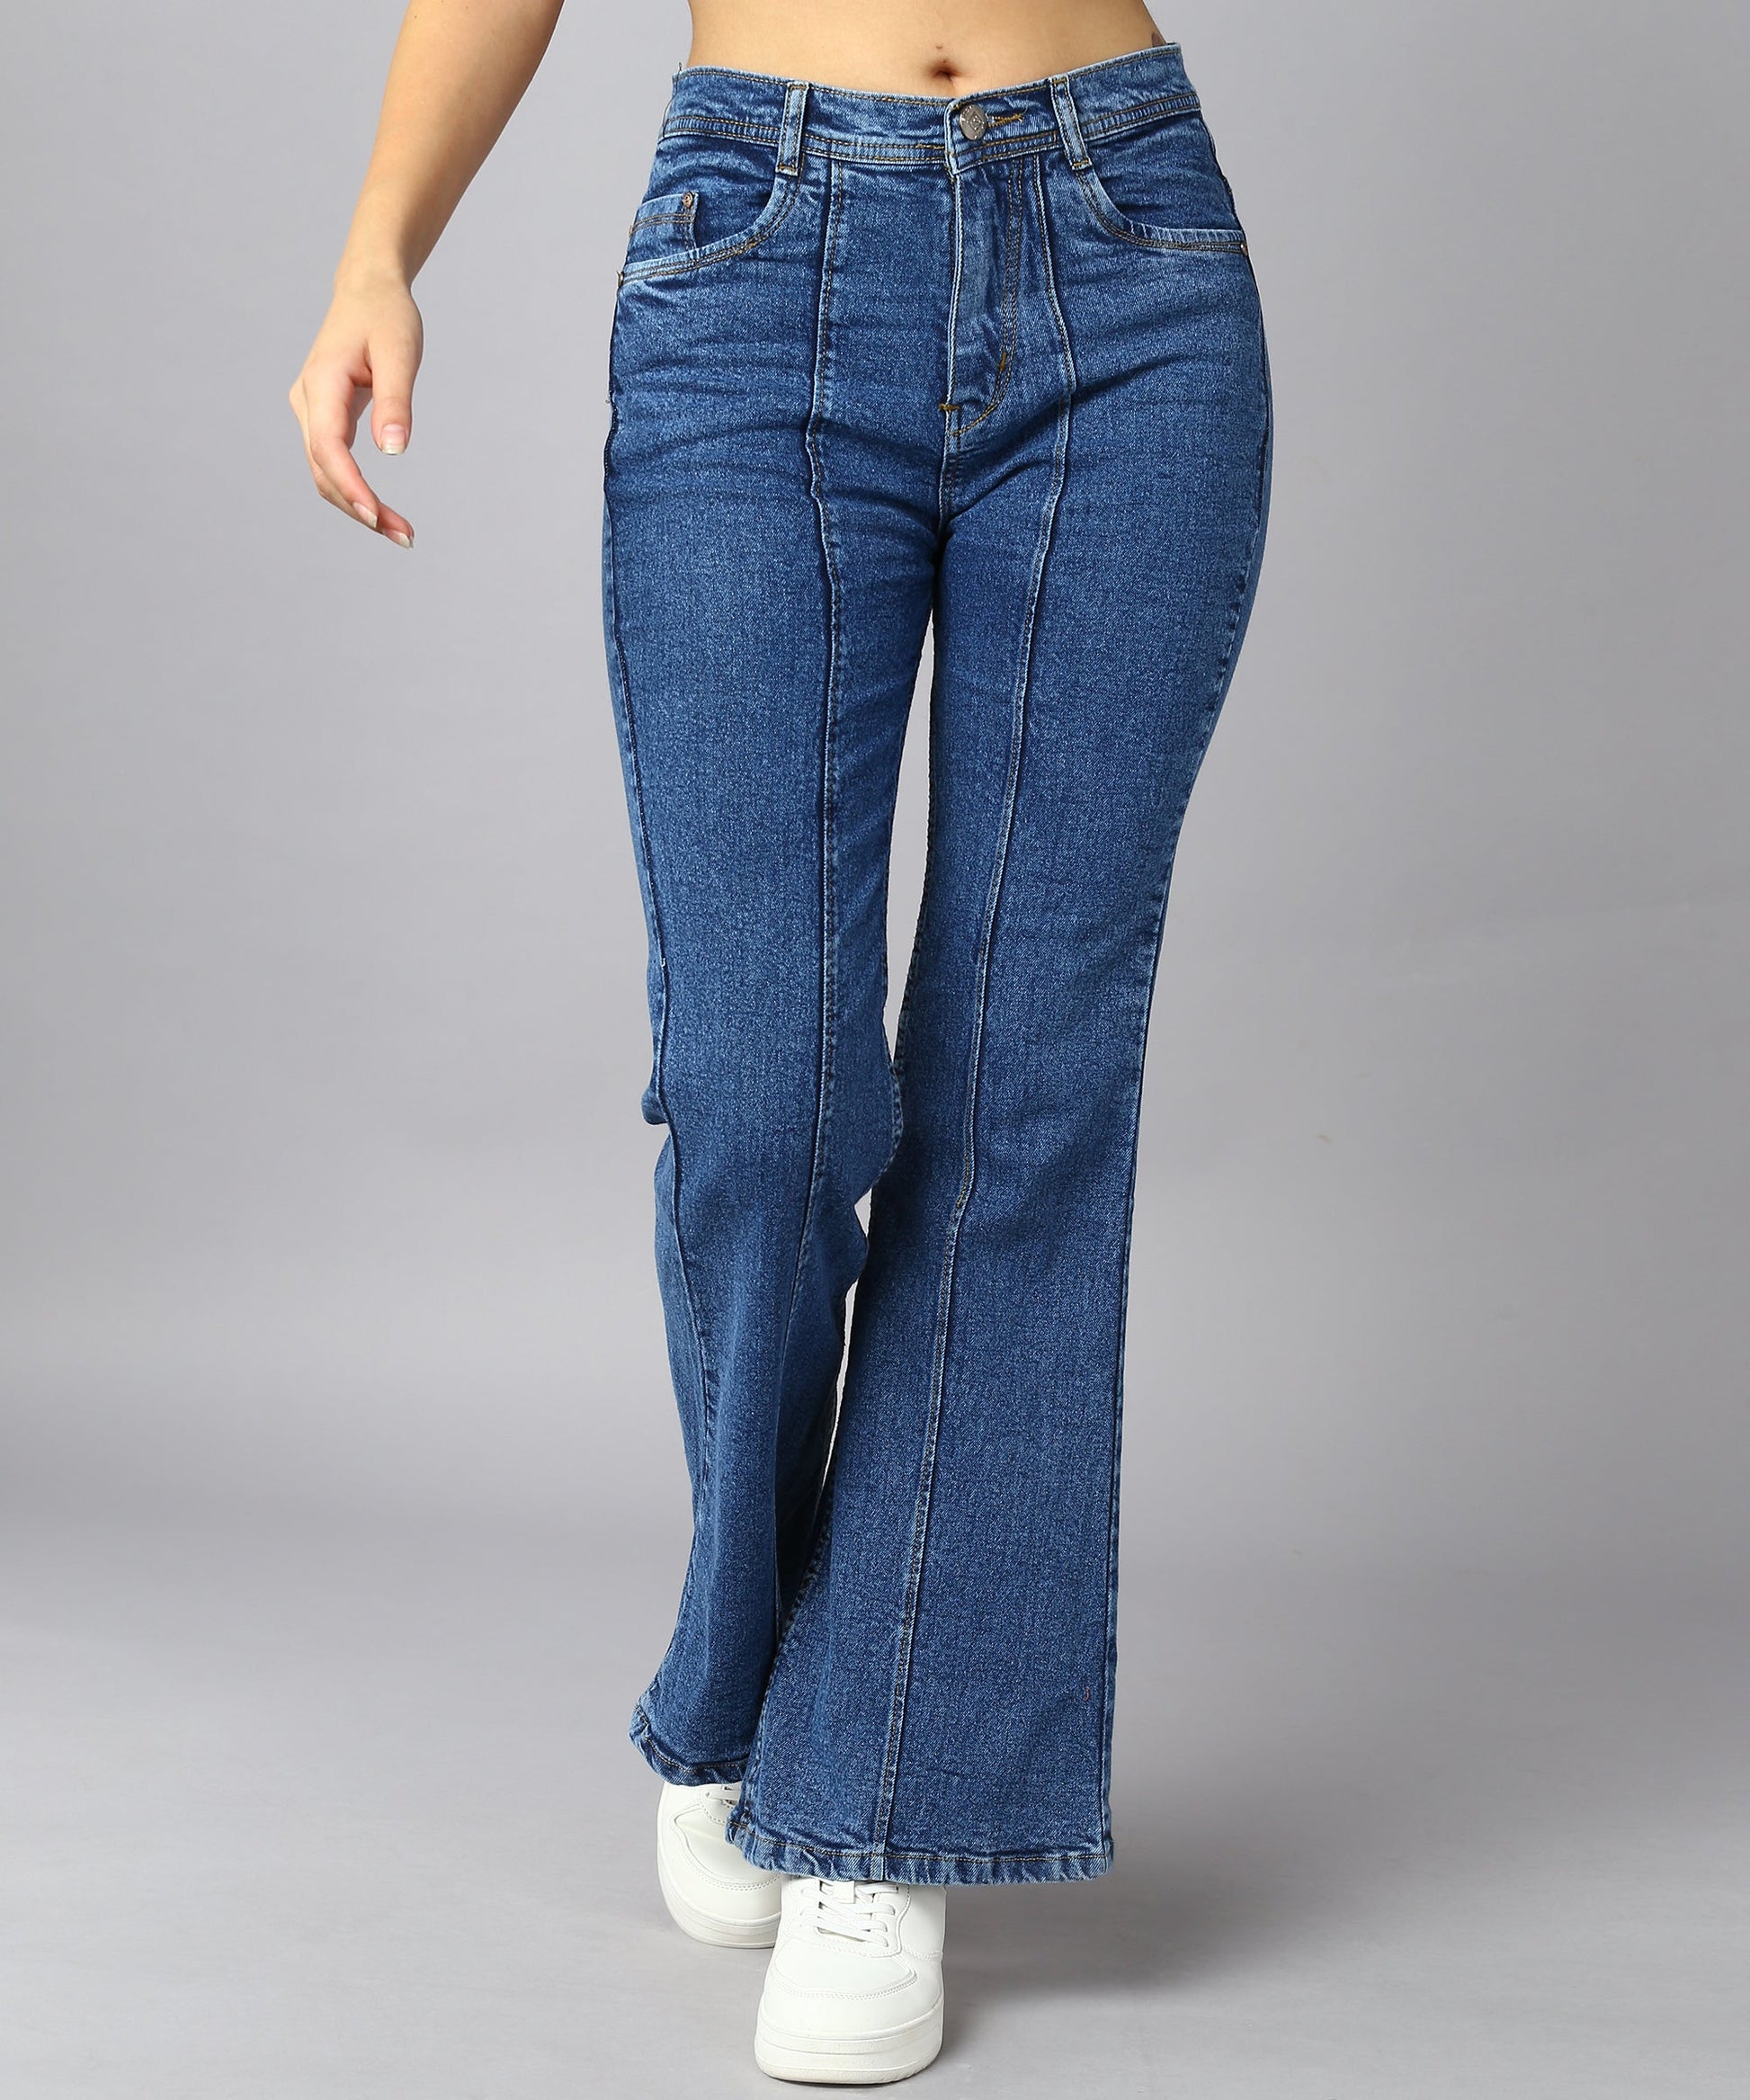 High Waist Bell Bottom Medium Blue Jeans - NiftyJeans